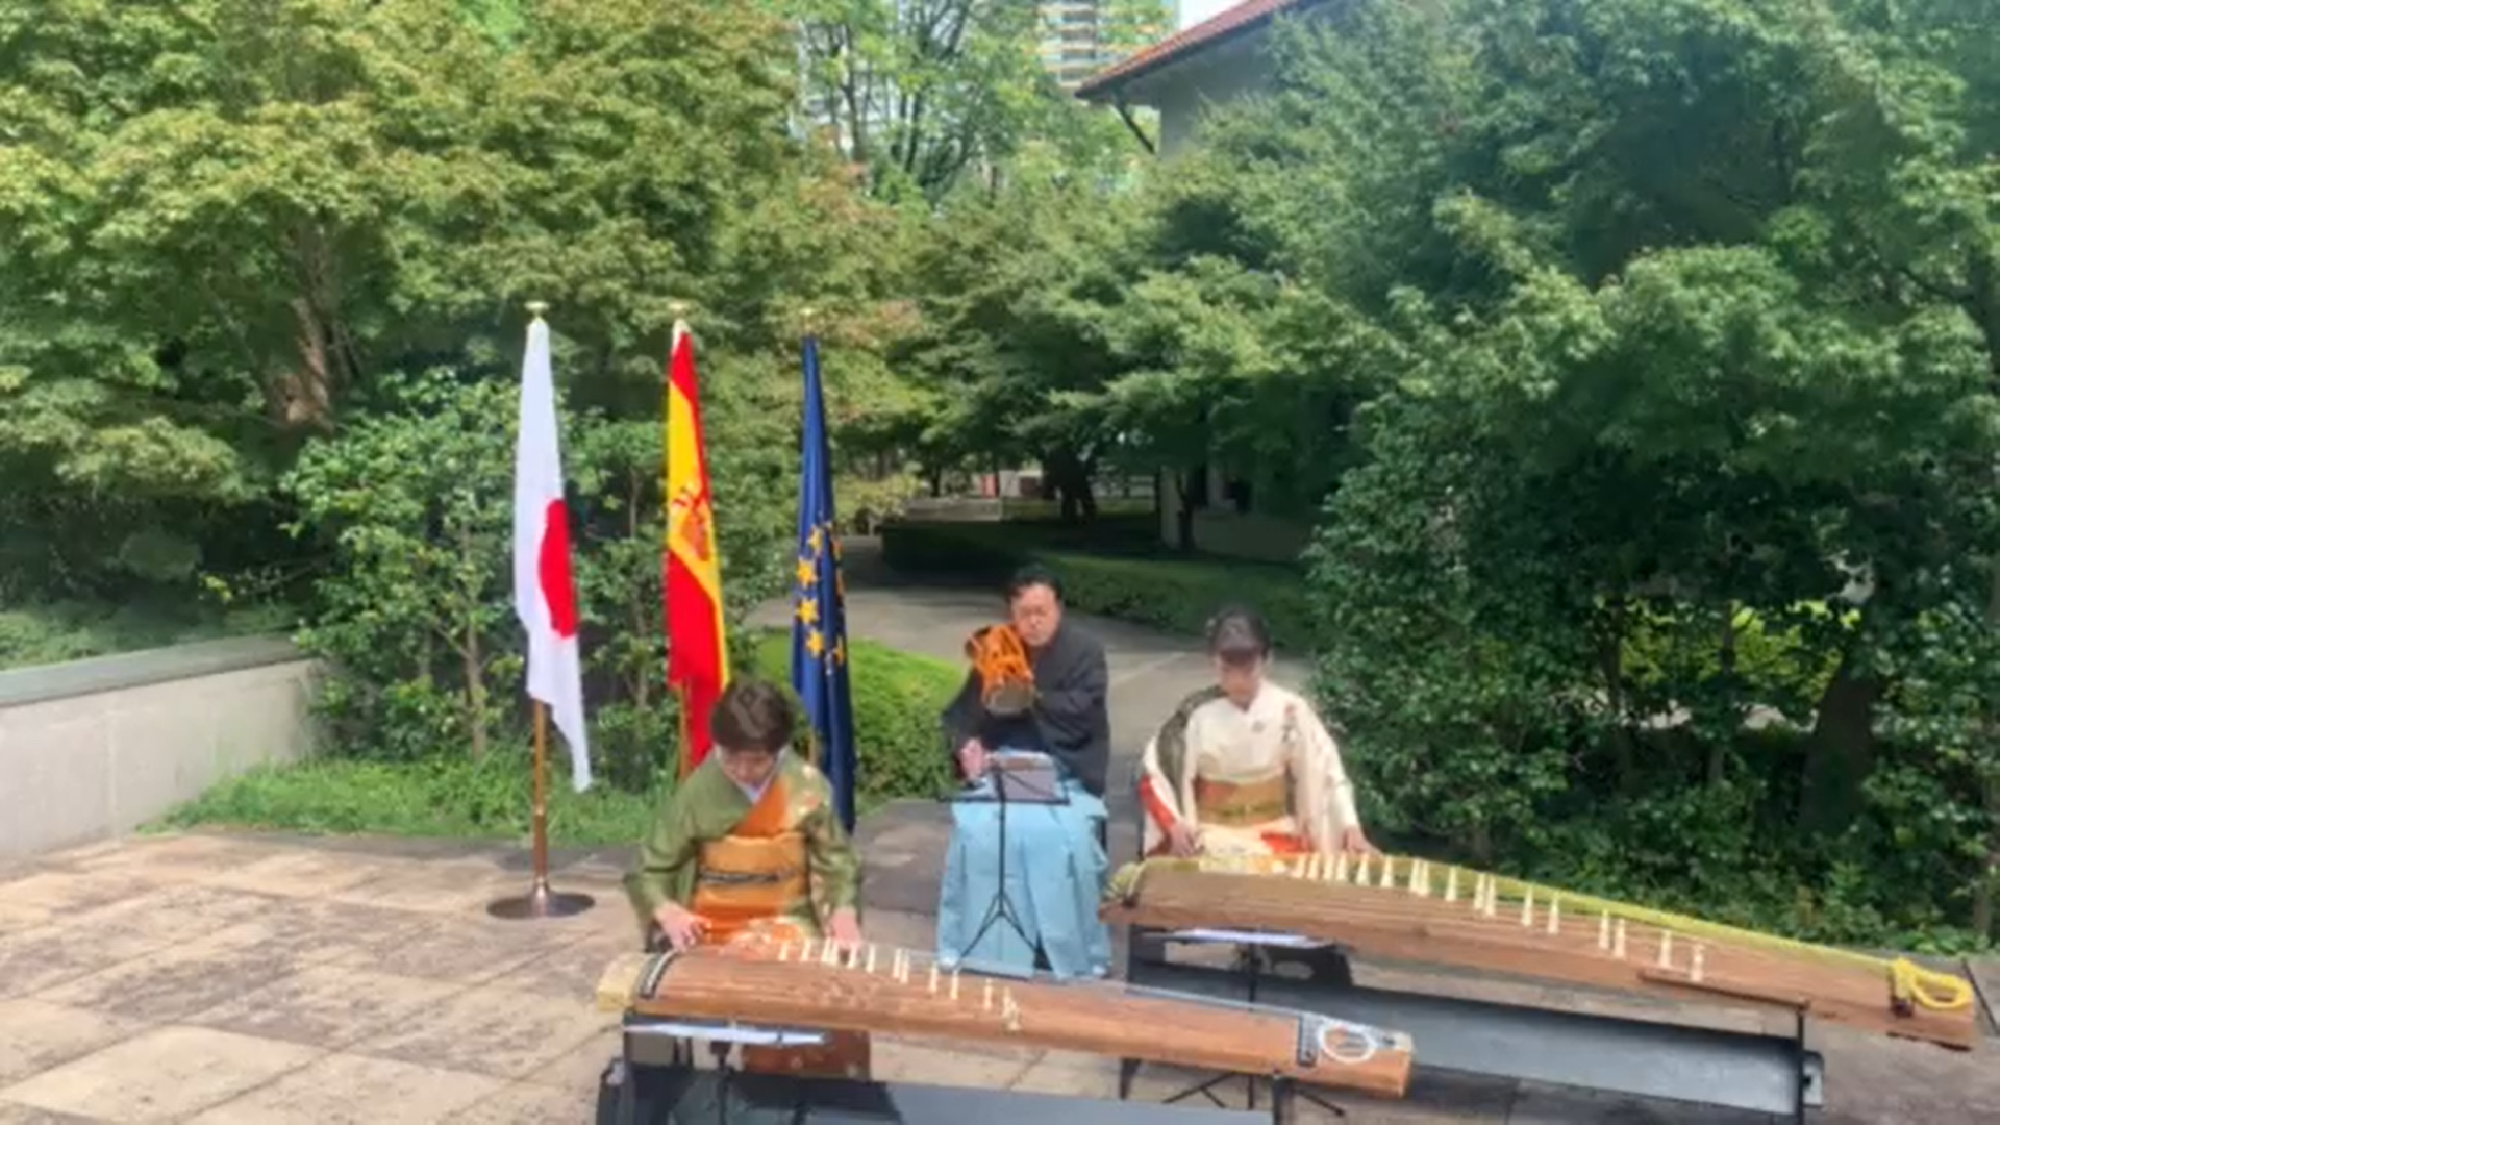 L'ambaixada d'Espanya al Japó posa finalment lletra a l'himne espanyol